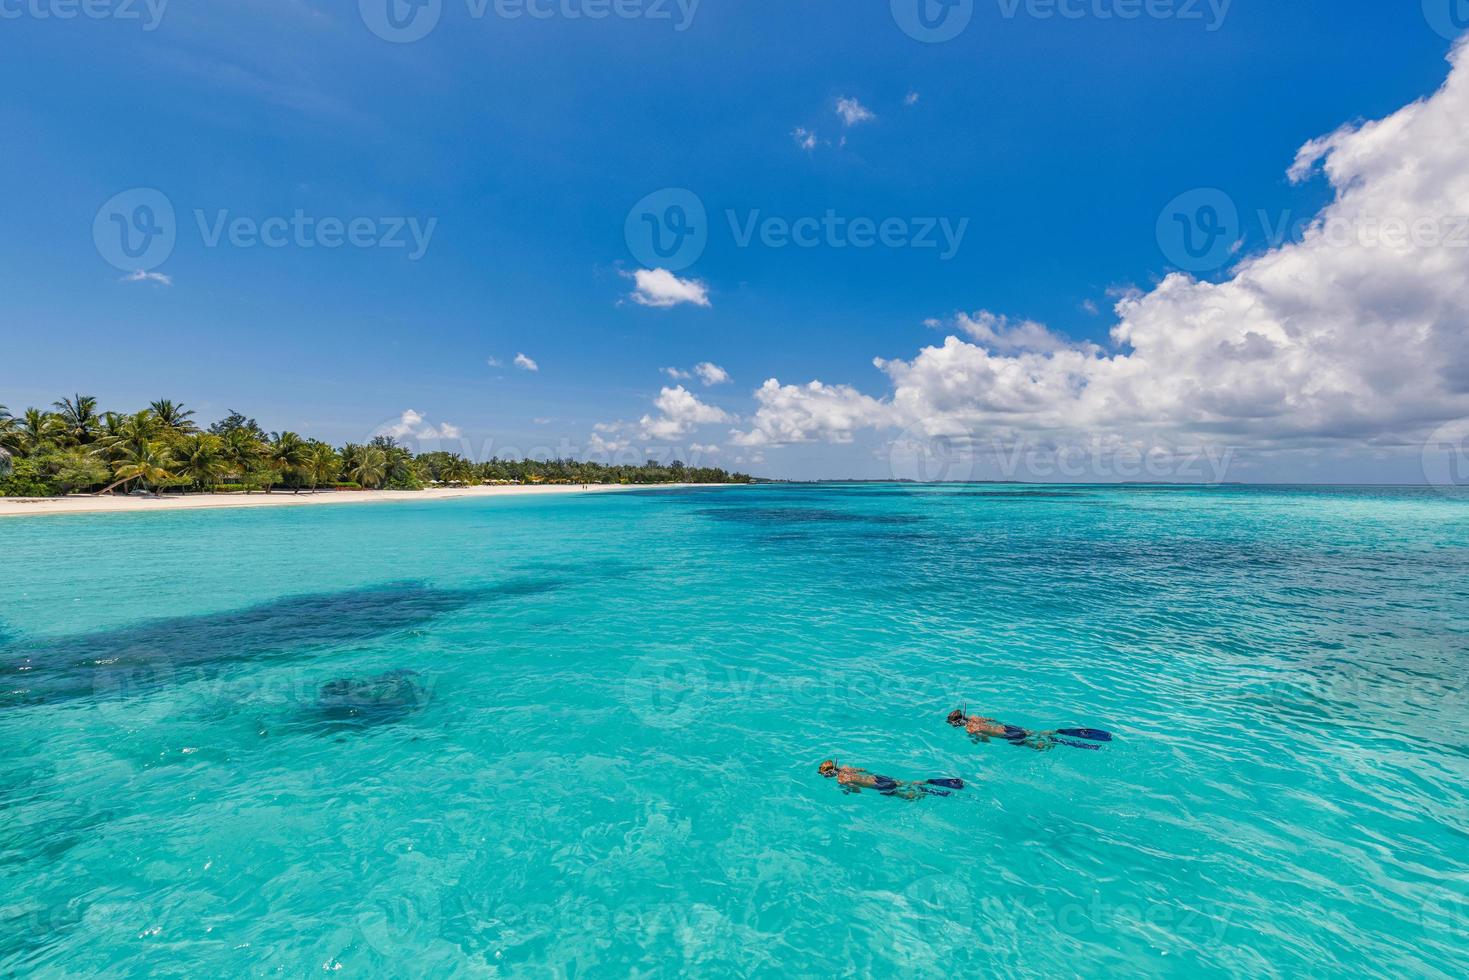 kaukasiska par turister snorklar i kristallklart turkost vatten nära ön Maldiverna. perfekta väderförhållanden på lyxresorts strandscen, lugnt havsvatten, par exotiskt vatten, undervattensvilda djur foto